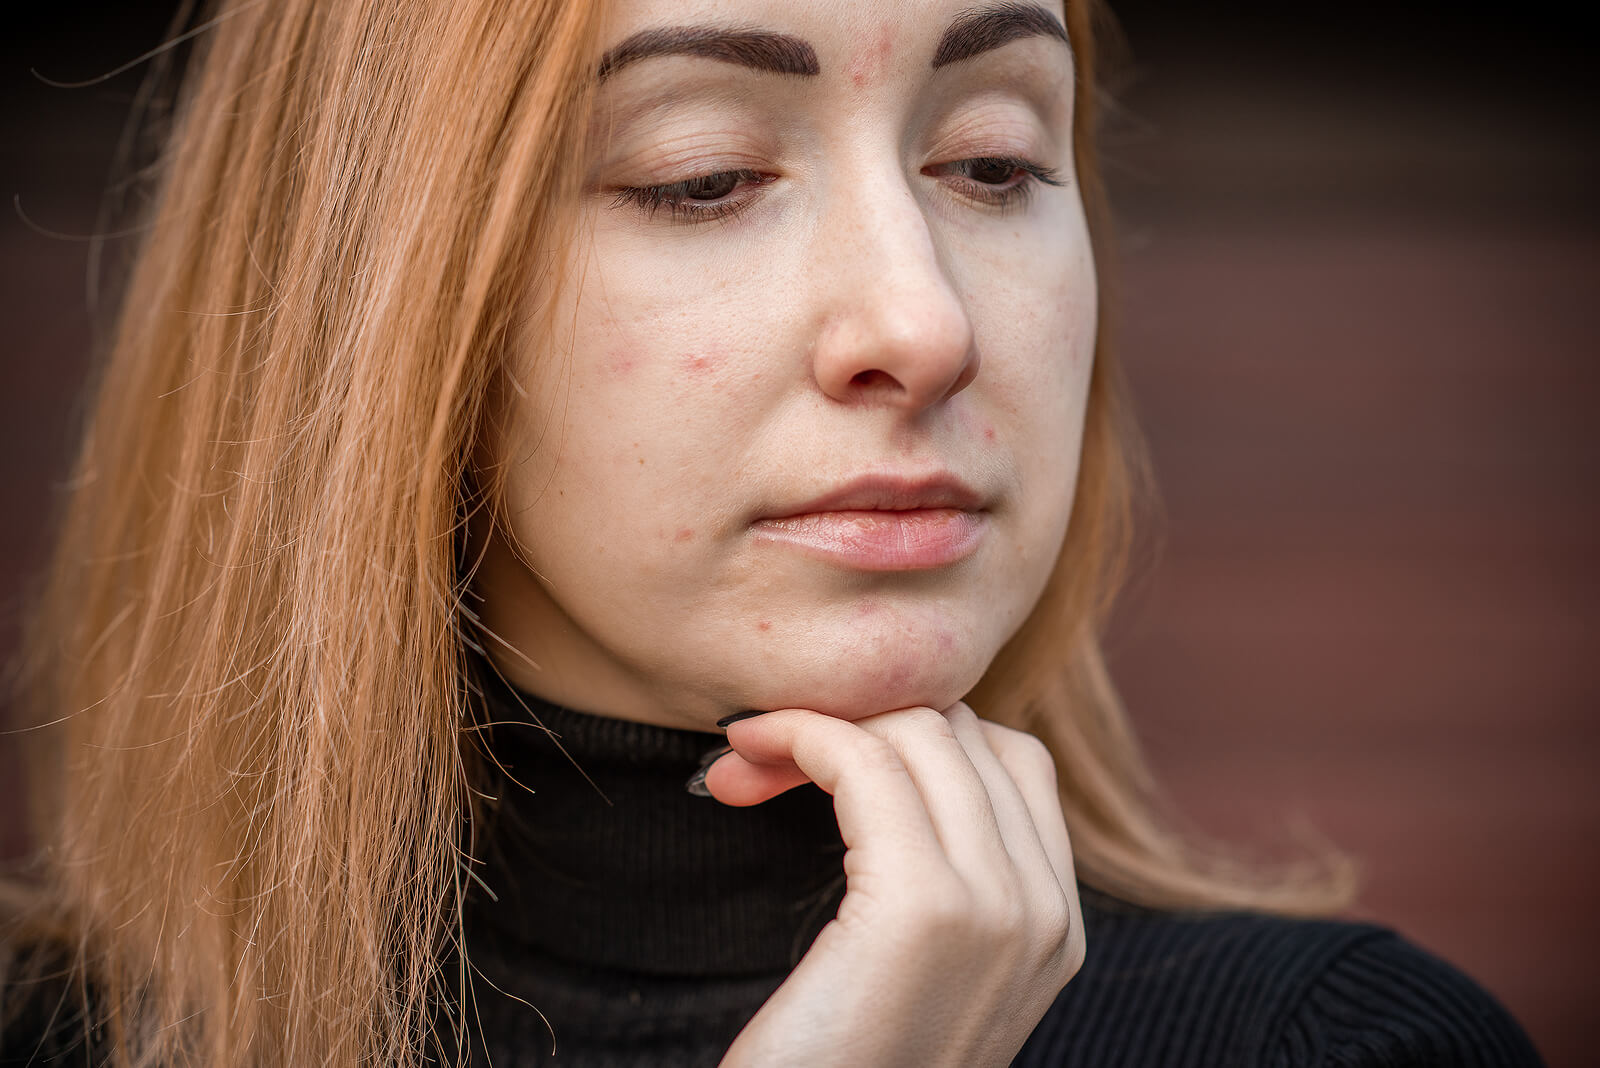 Une jeune adolescente avec de l'acné sur le visage.